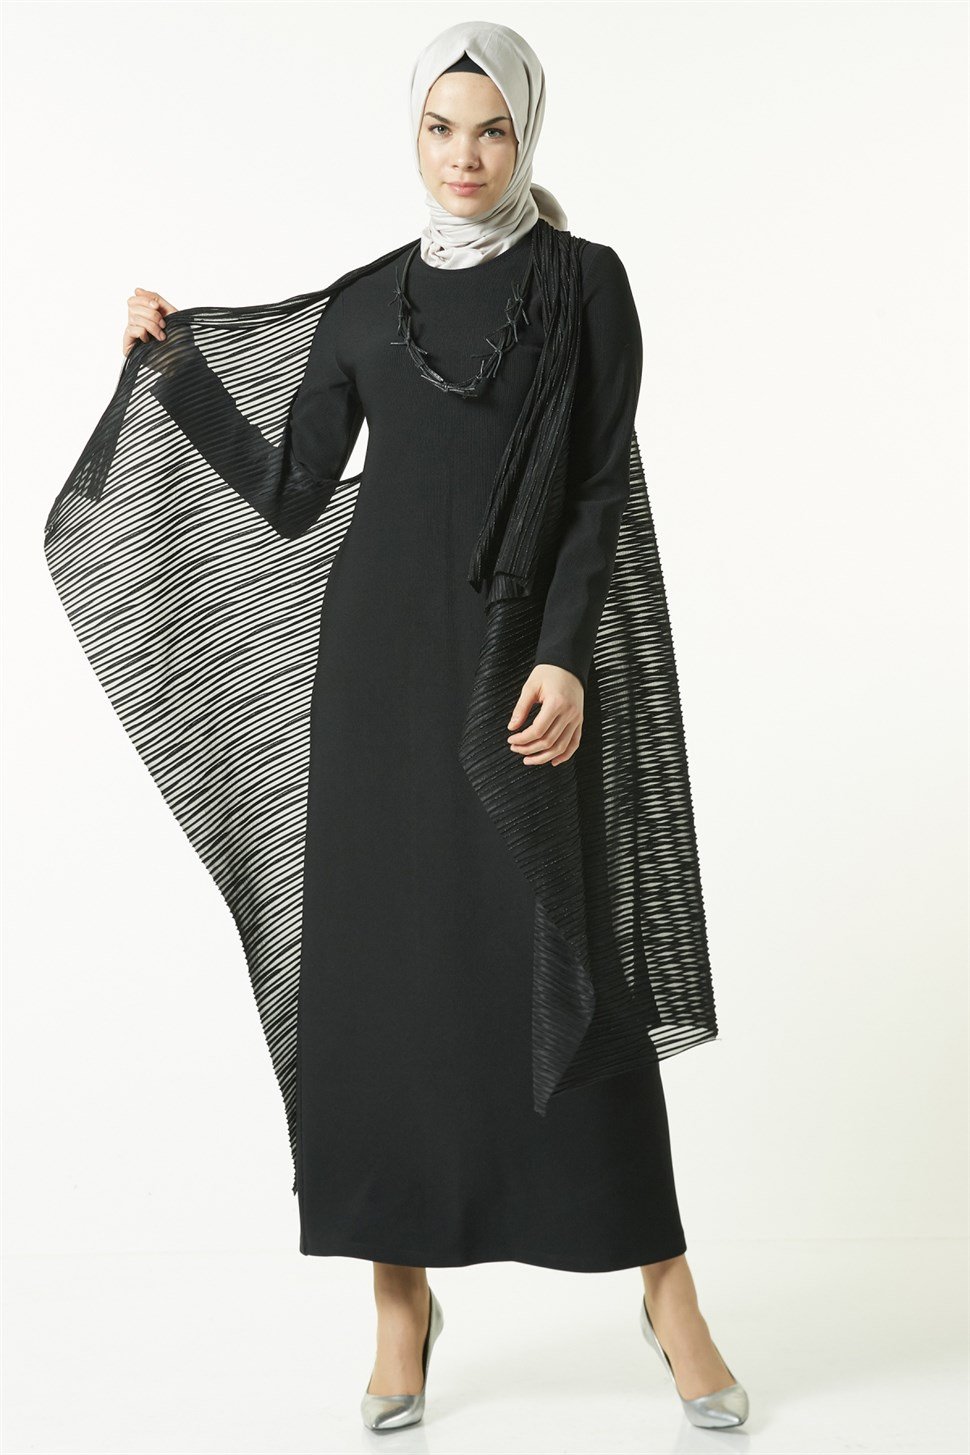 Armine Takım Elbise 8K9605 Siyah - ARMİNE | Hayatınıza Artı Değer Katar!